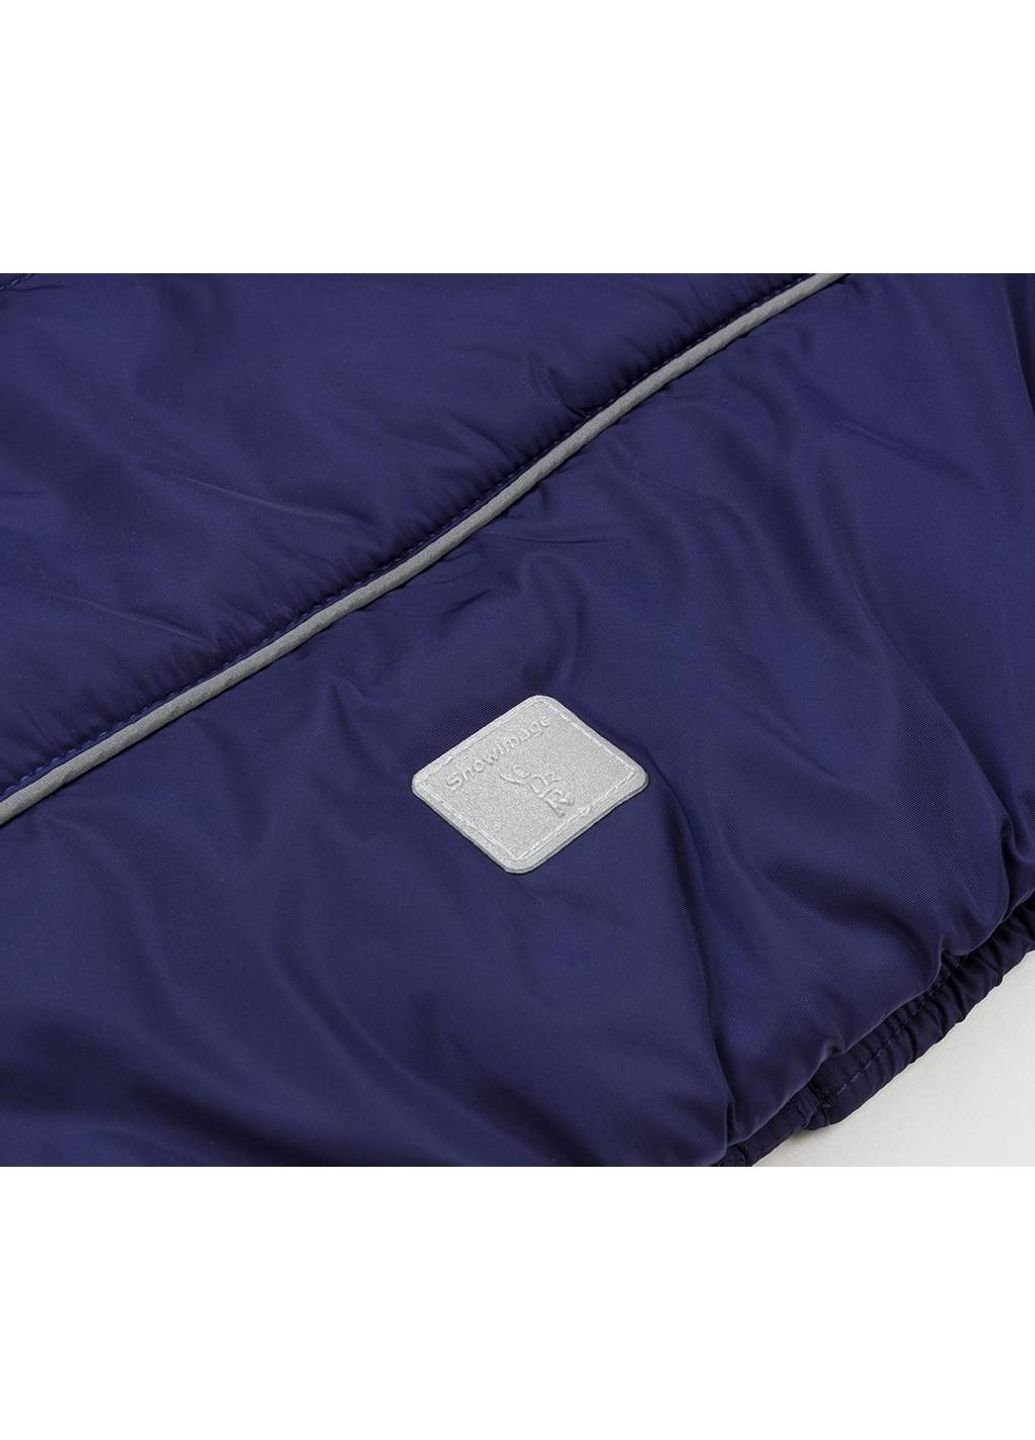 Фиолетовая демисезонная куртка с капюшоном (sicmy-g306-128b-blue) Snowimage